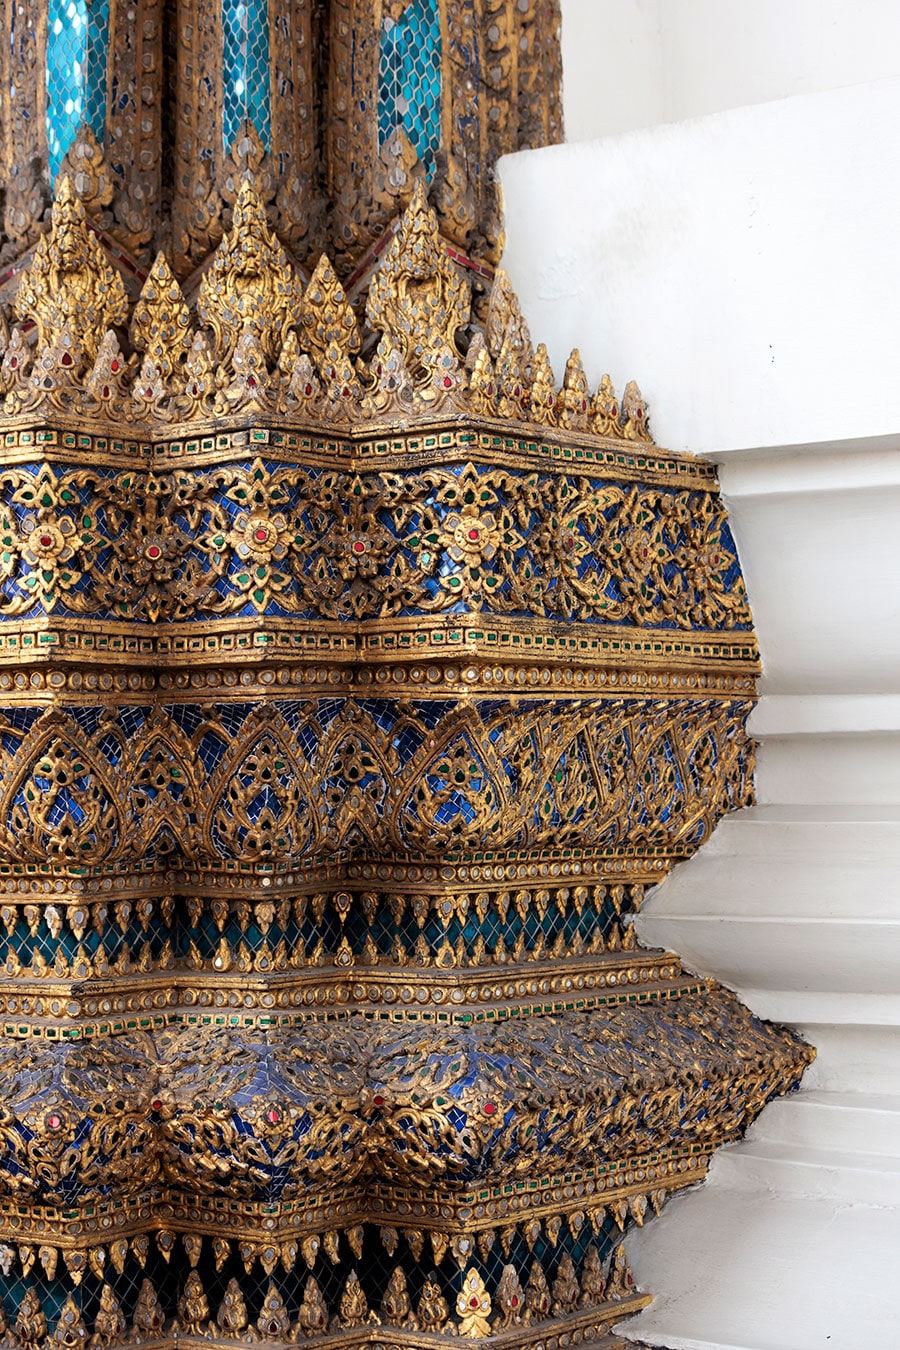 歴代国王の遺骨を納める大仏塔は装飾の色が少しずつ異なる。